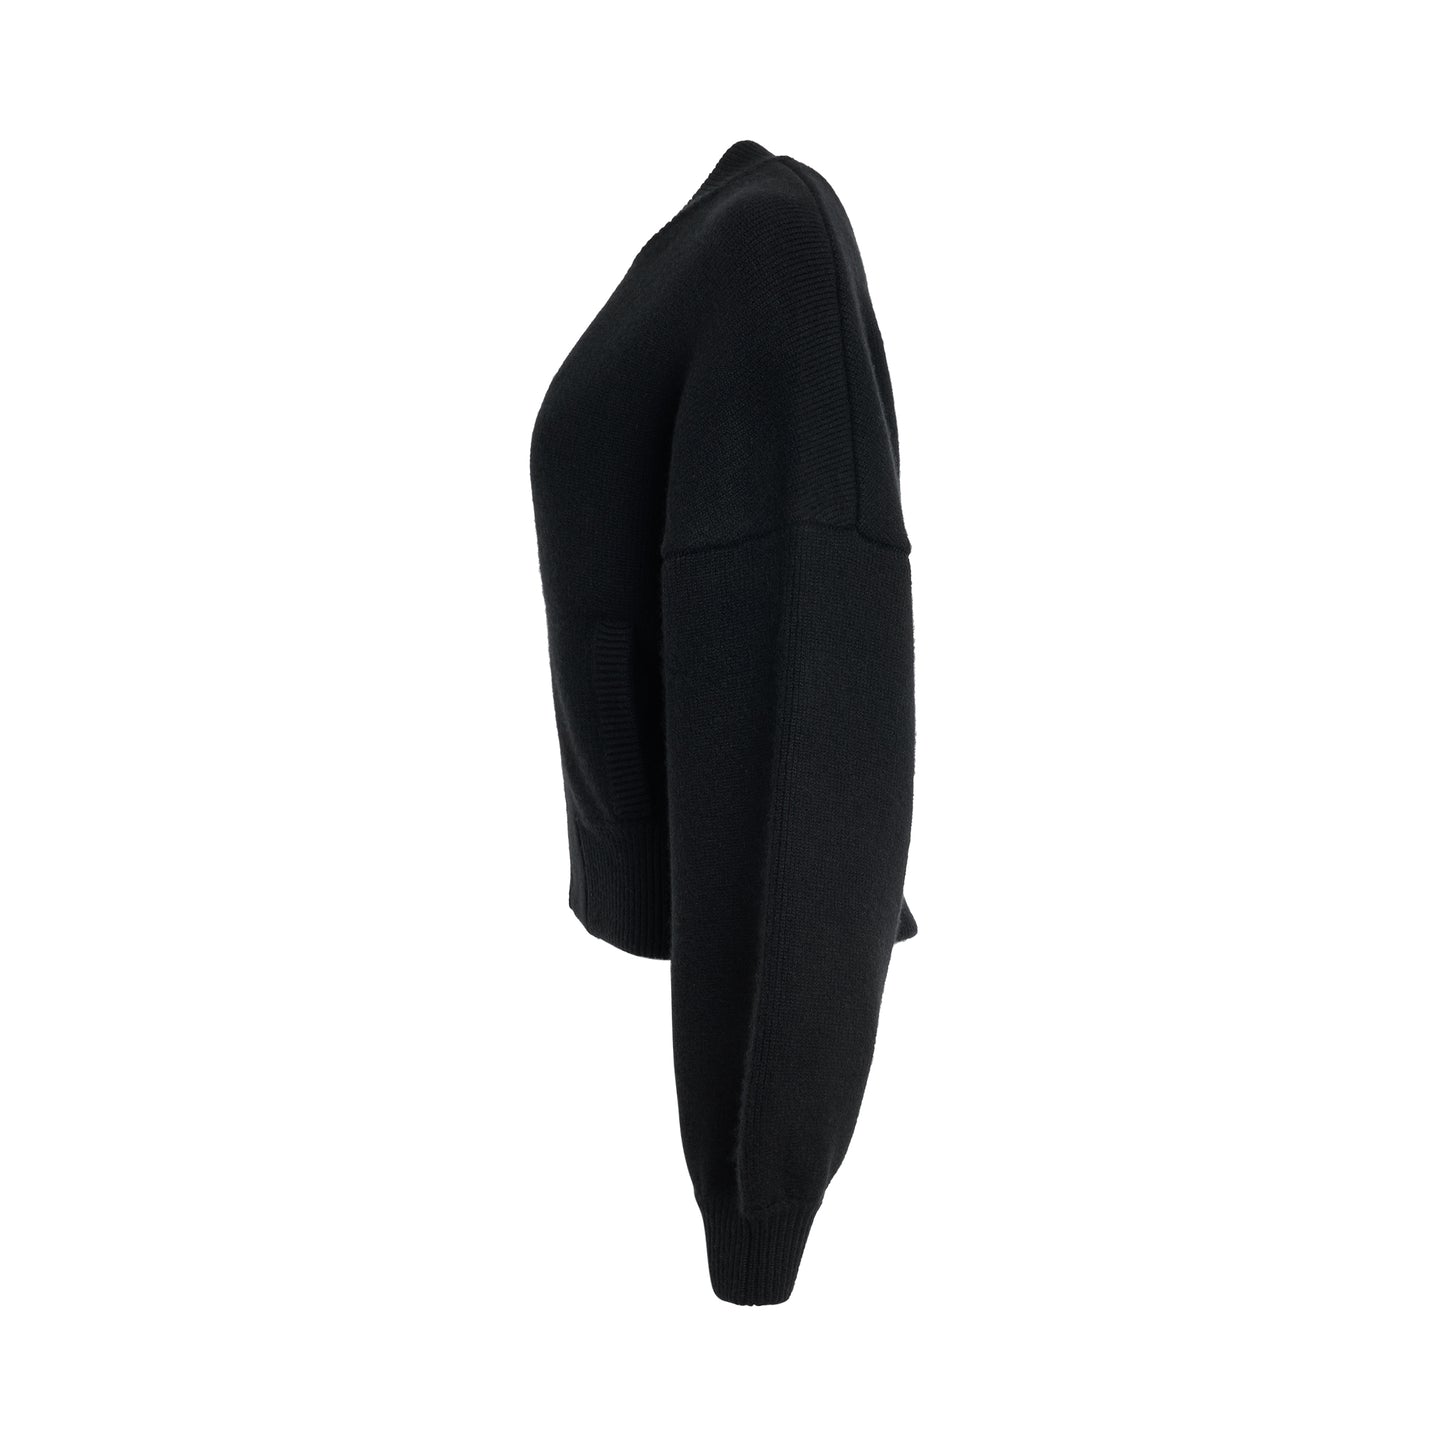 Rhea Jacket in Black